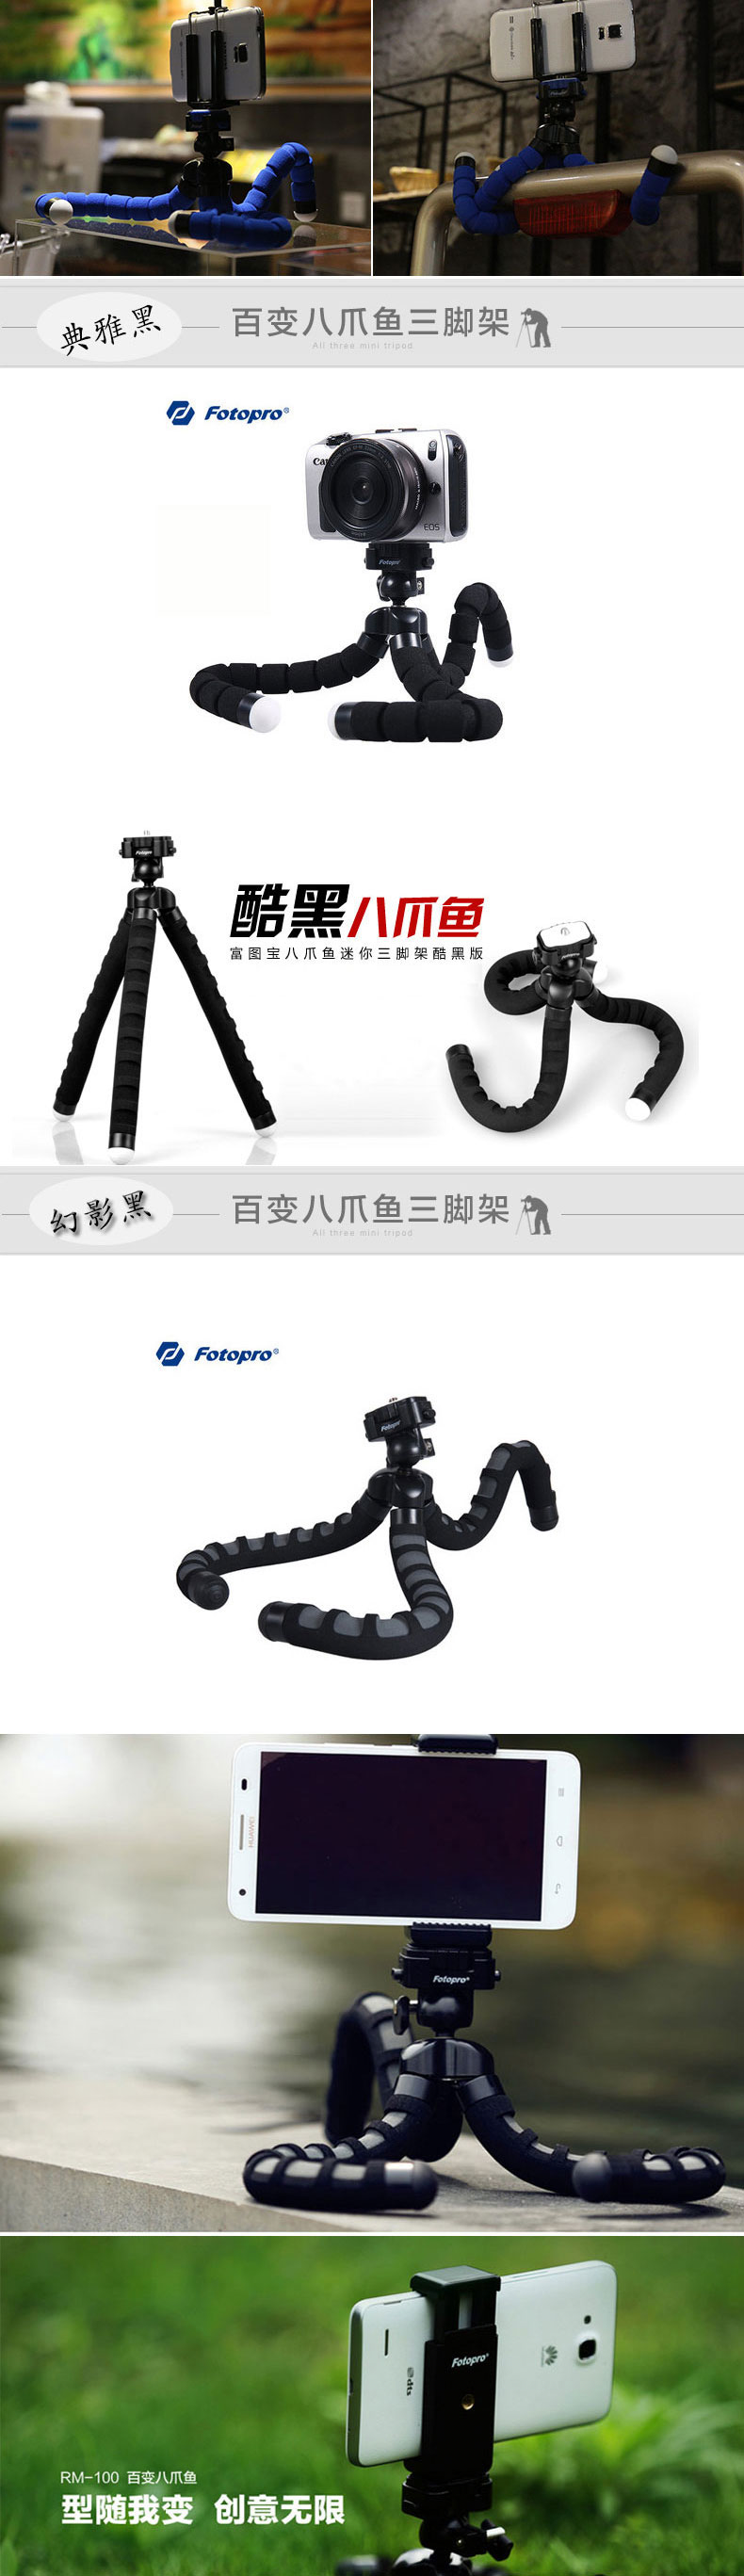 富图宝(Fotopro) RM-100 典雅黑 便携八爪鱼懒人相机手机支架创意三脚架手机支架